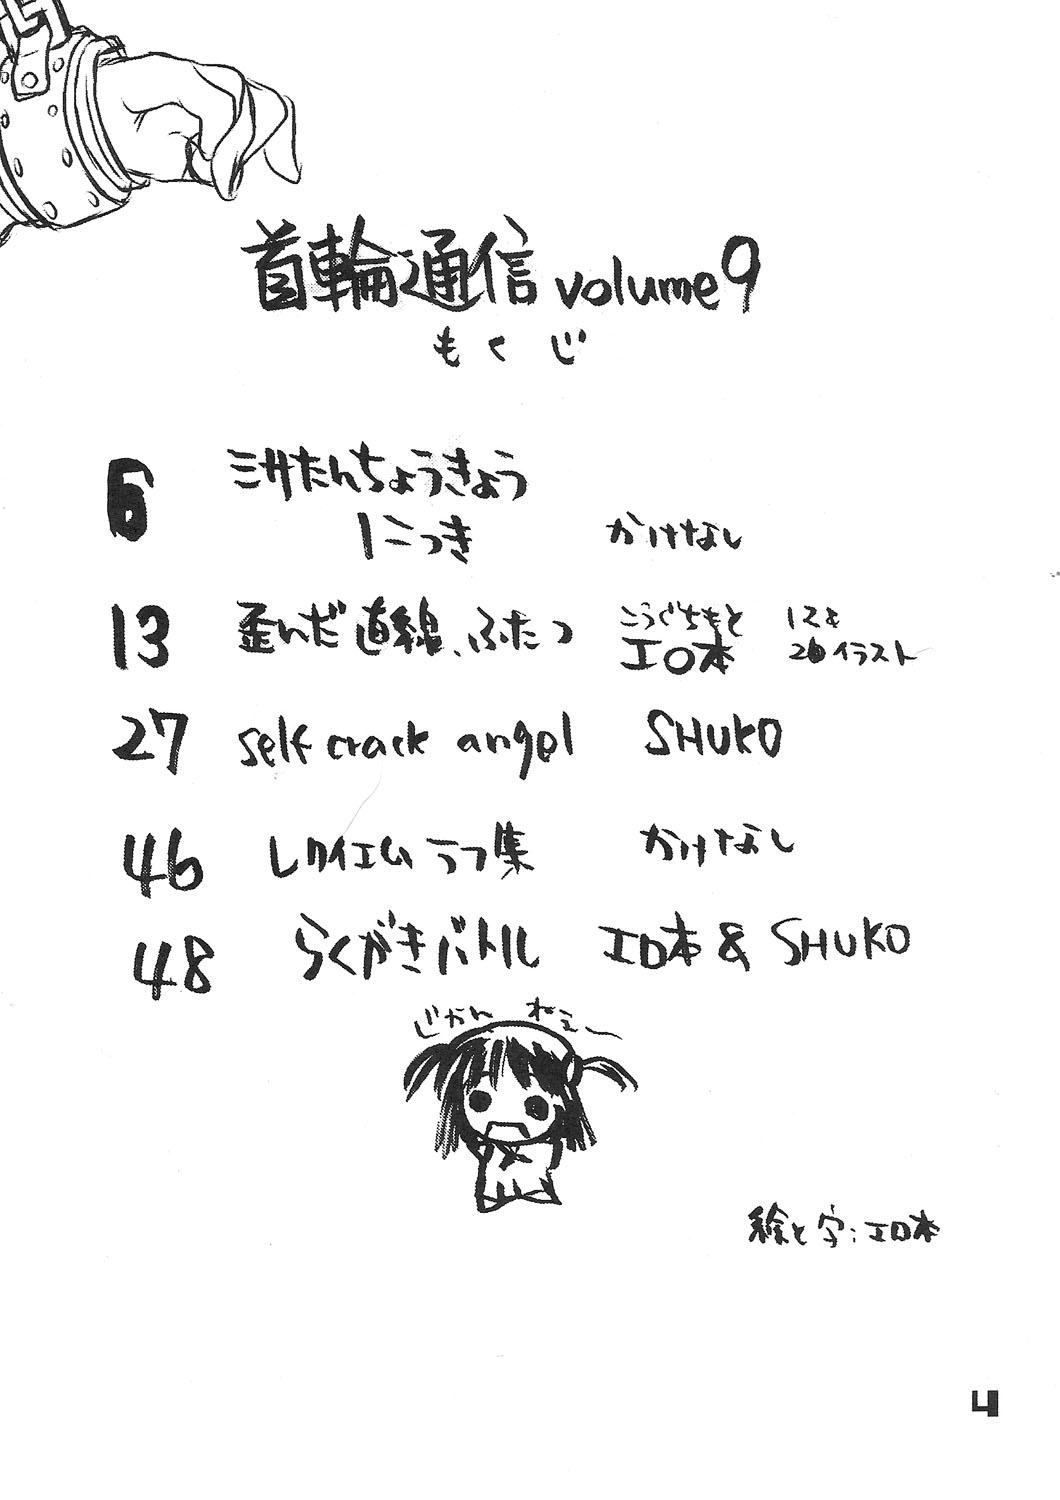 Stripper Kubiwa Tsuushin vol. 9 - Higurashi no naku koro ni Death note Throat - Page 3